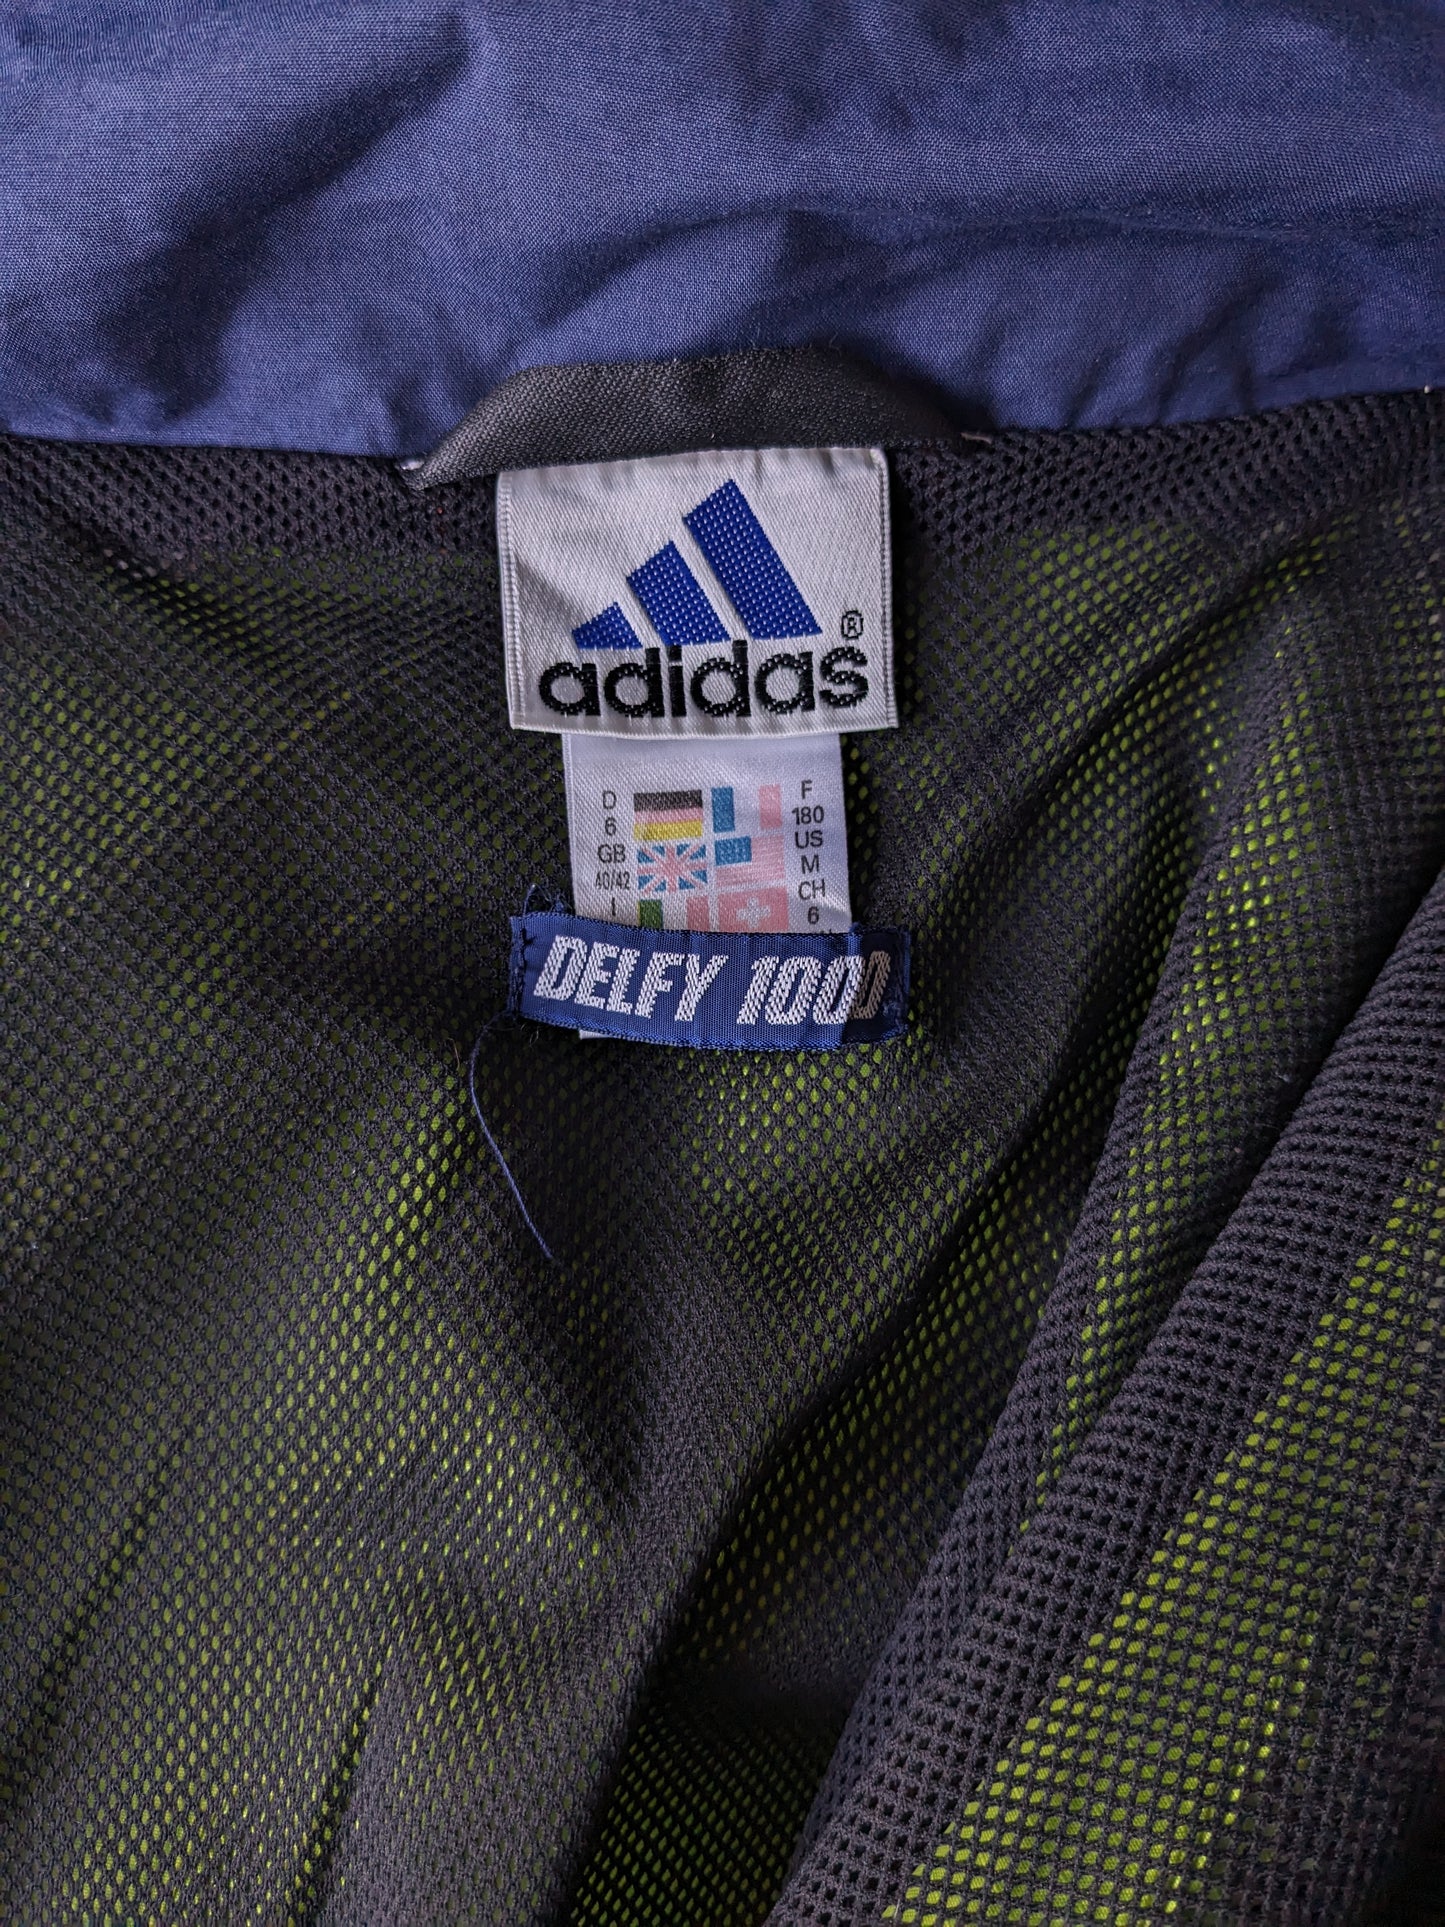 Adidas "Delfi 1000" veste / prise. Couleur bleu jaune. Taille xl.